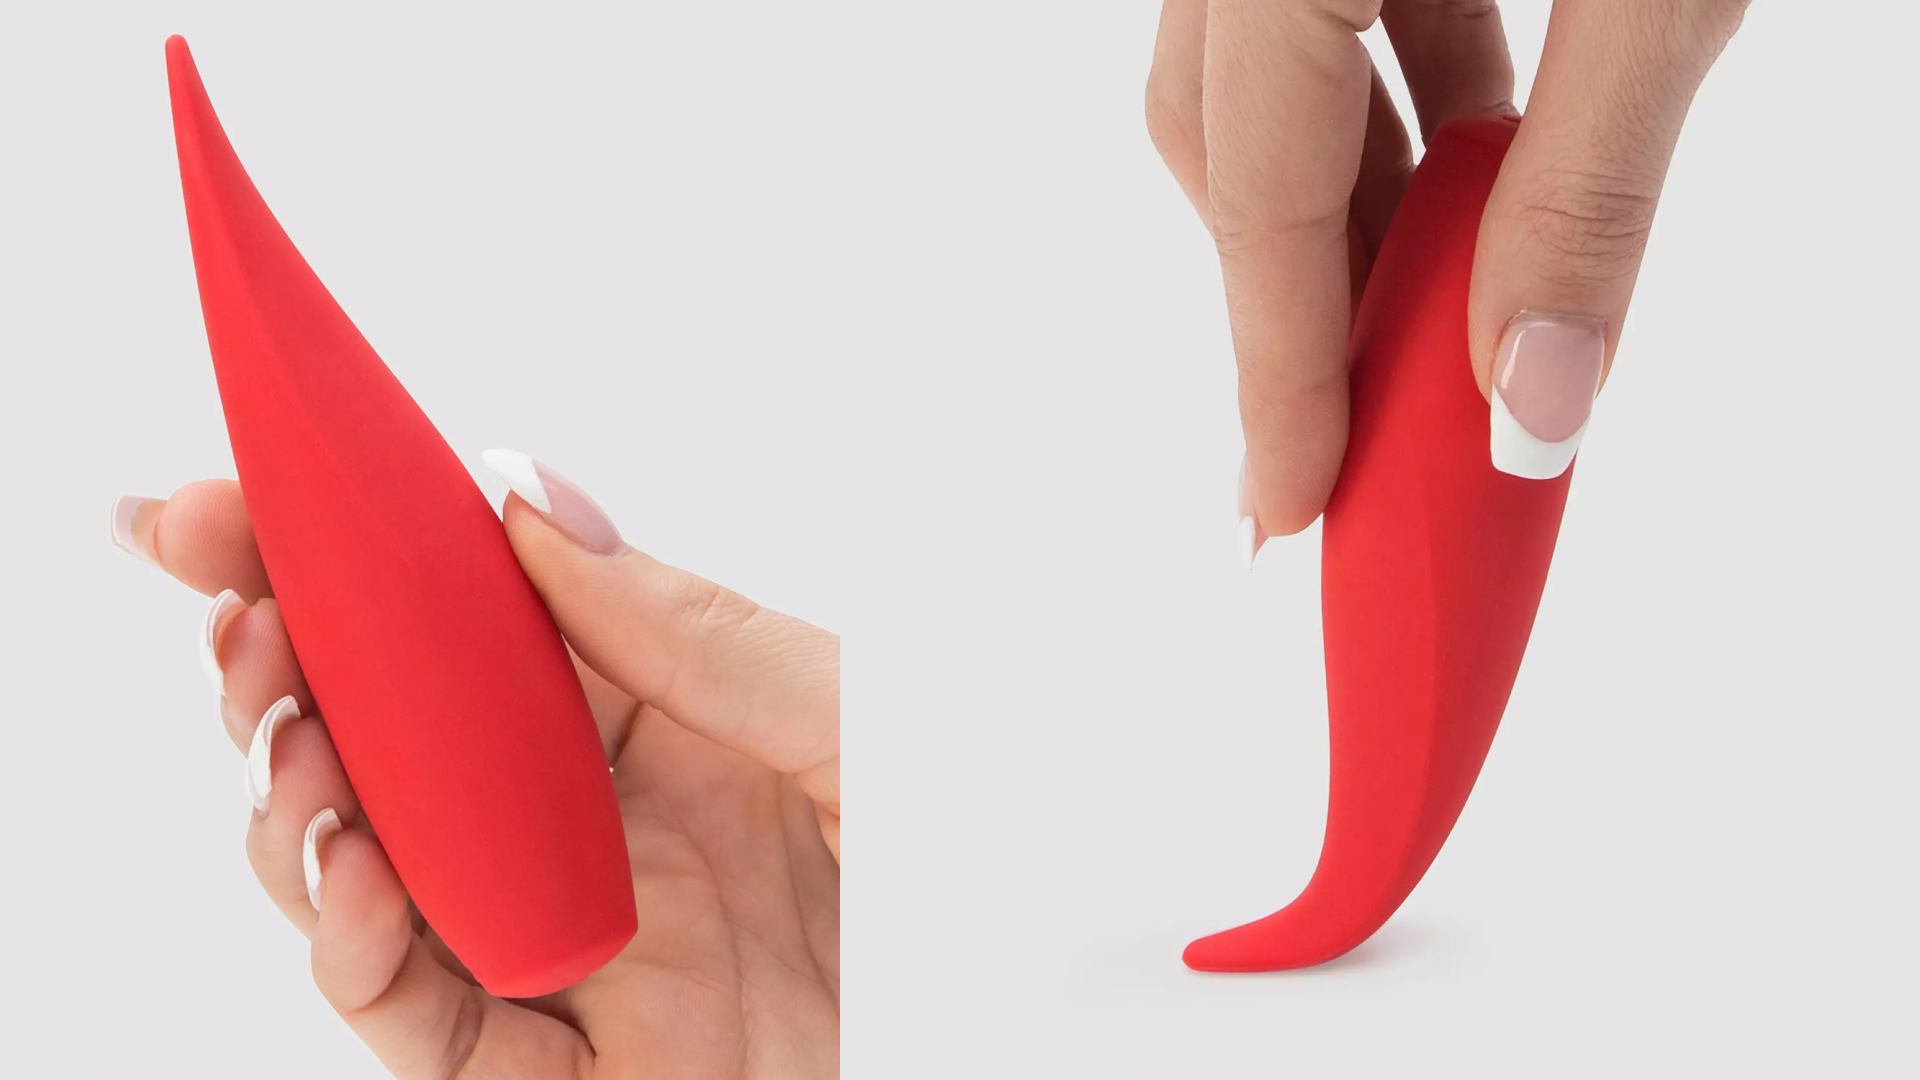 couples oral sex vibrator that mimics a flickering tongue